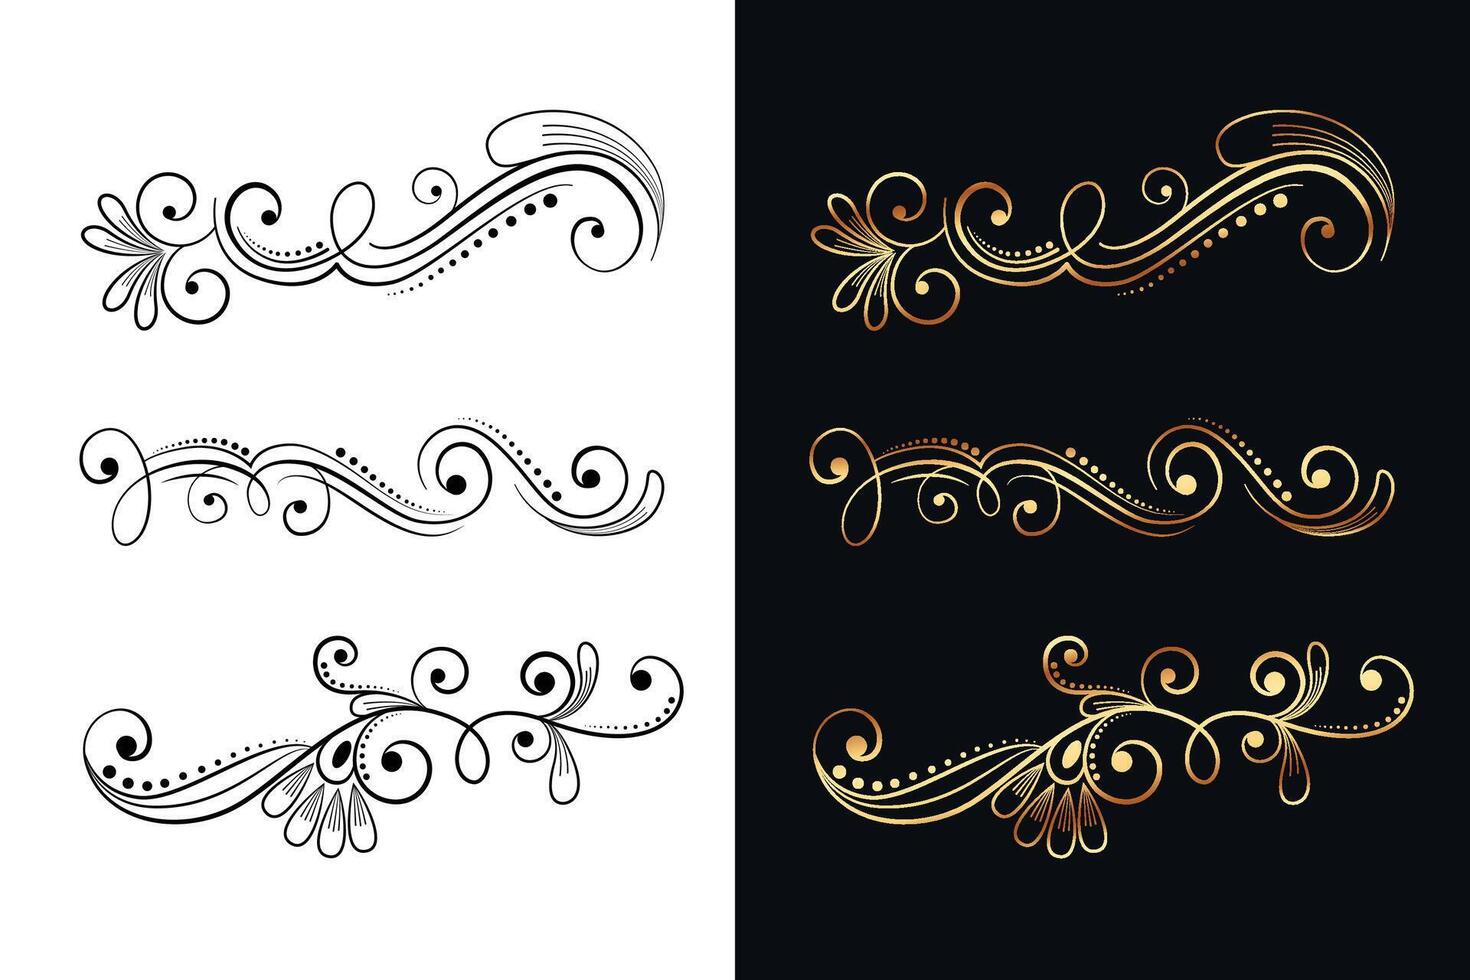 ornamental floral decorative design elements set of six vector